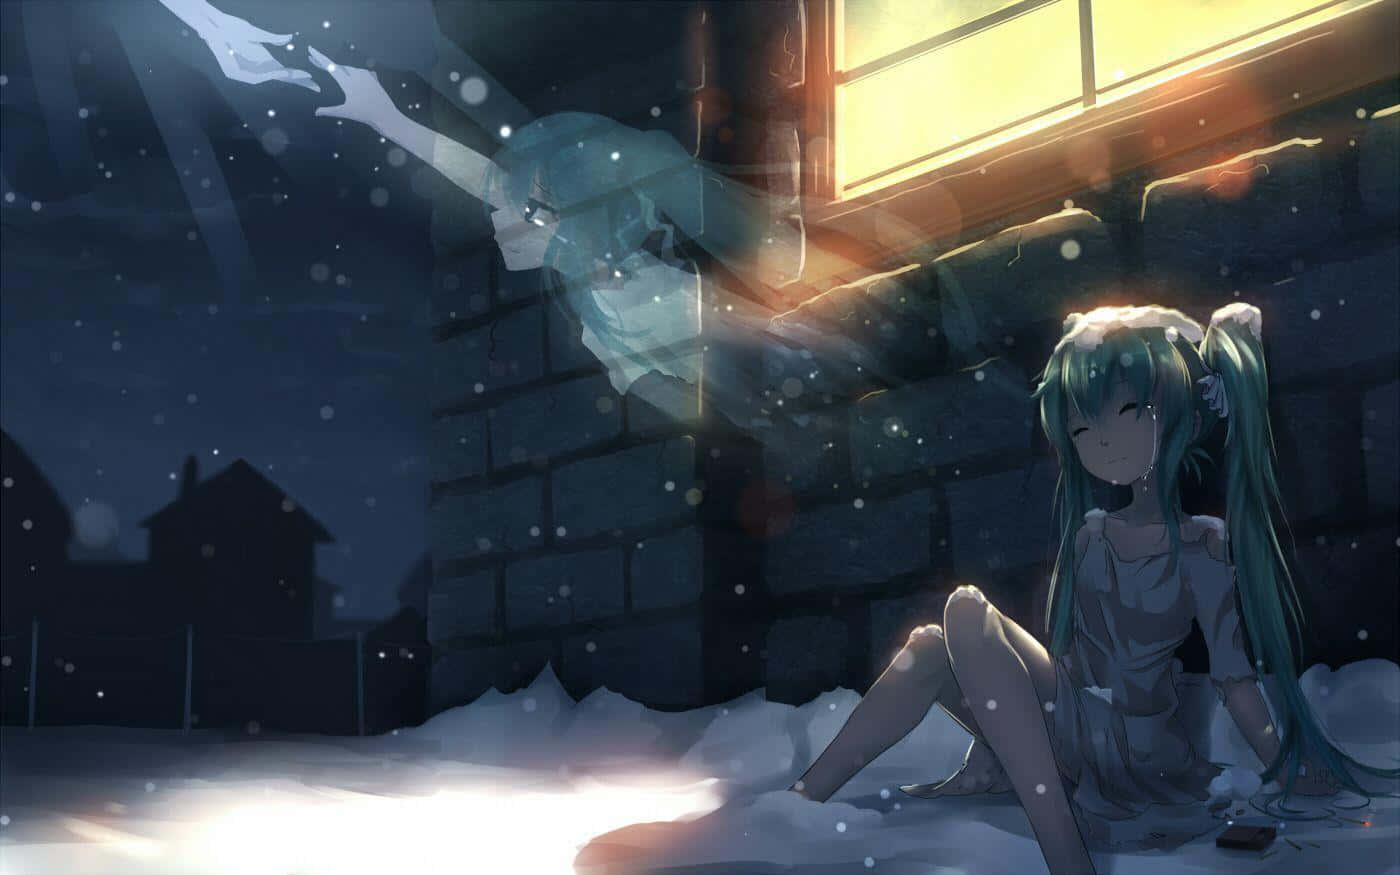 Unaimagen Fija Del Increíblemente Popular Anime Que Representa Las Difíciles Emociones De La Depresión. Fondo de pantalla